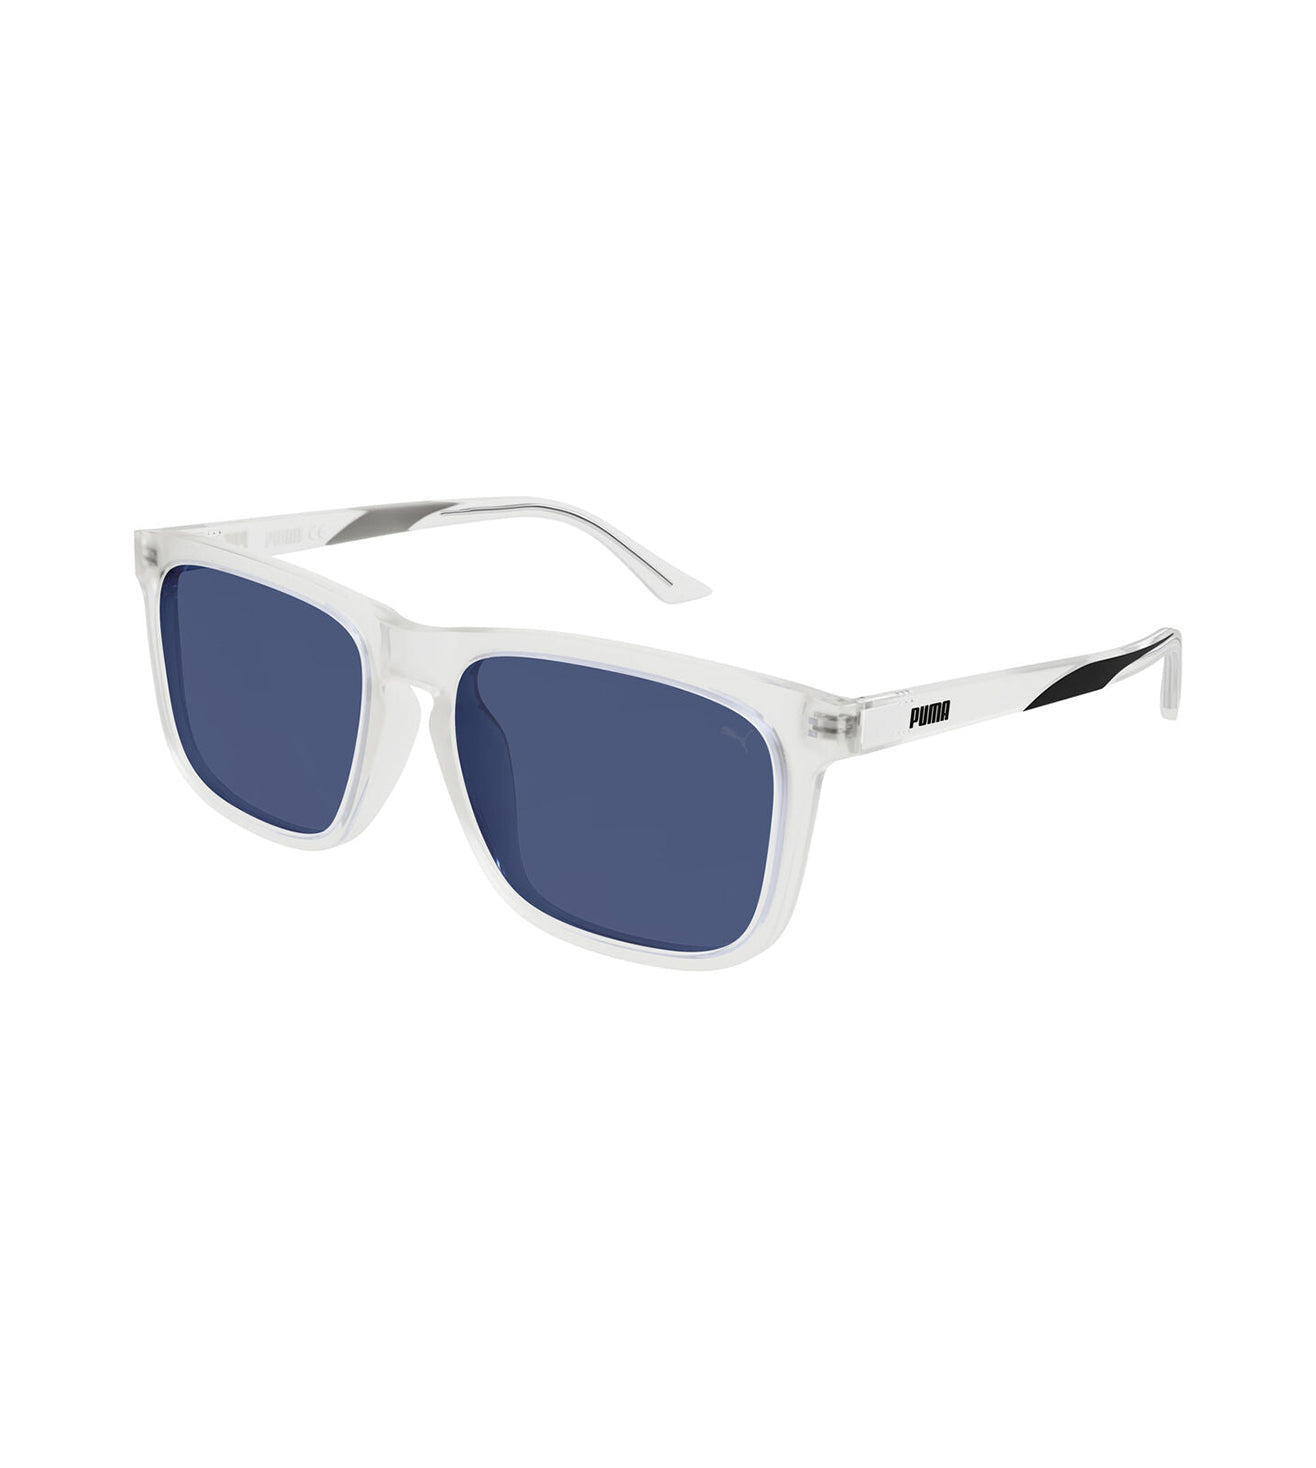 Puma Men's Blue Wrap Around Sunglasses